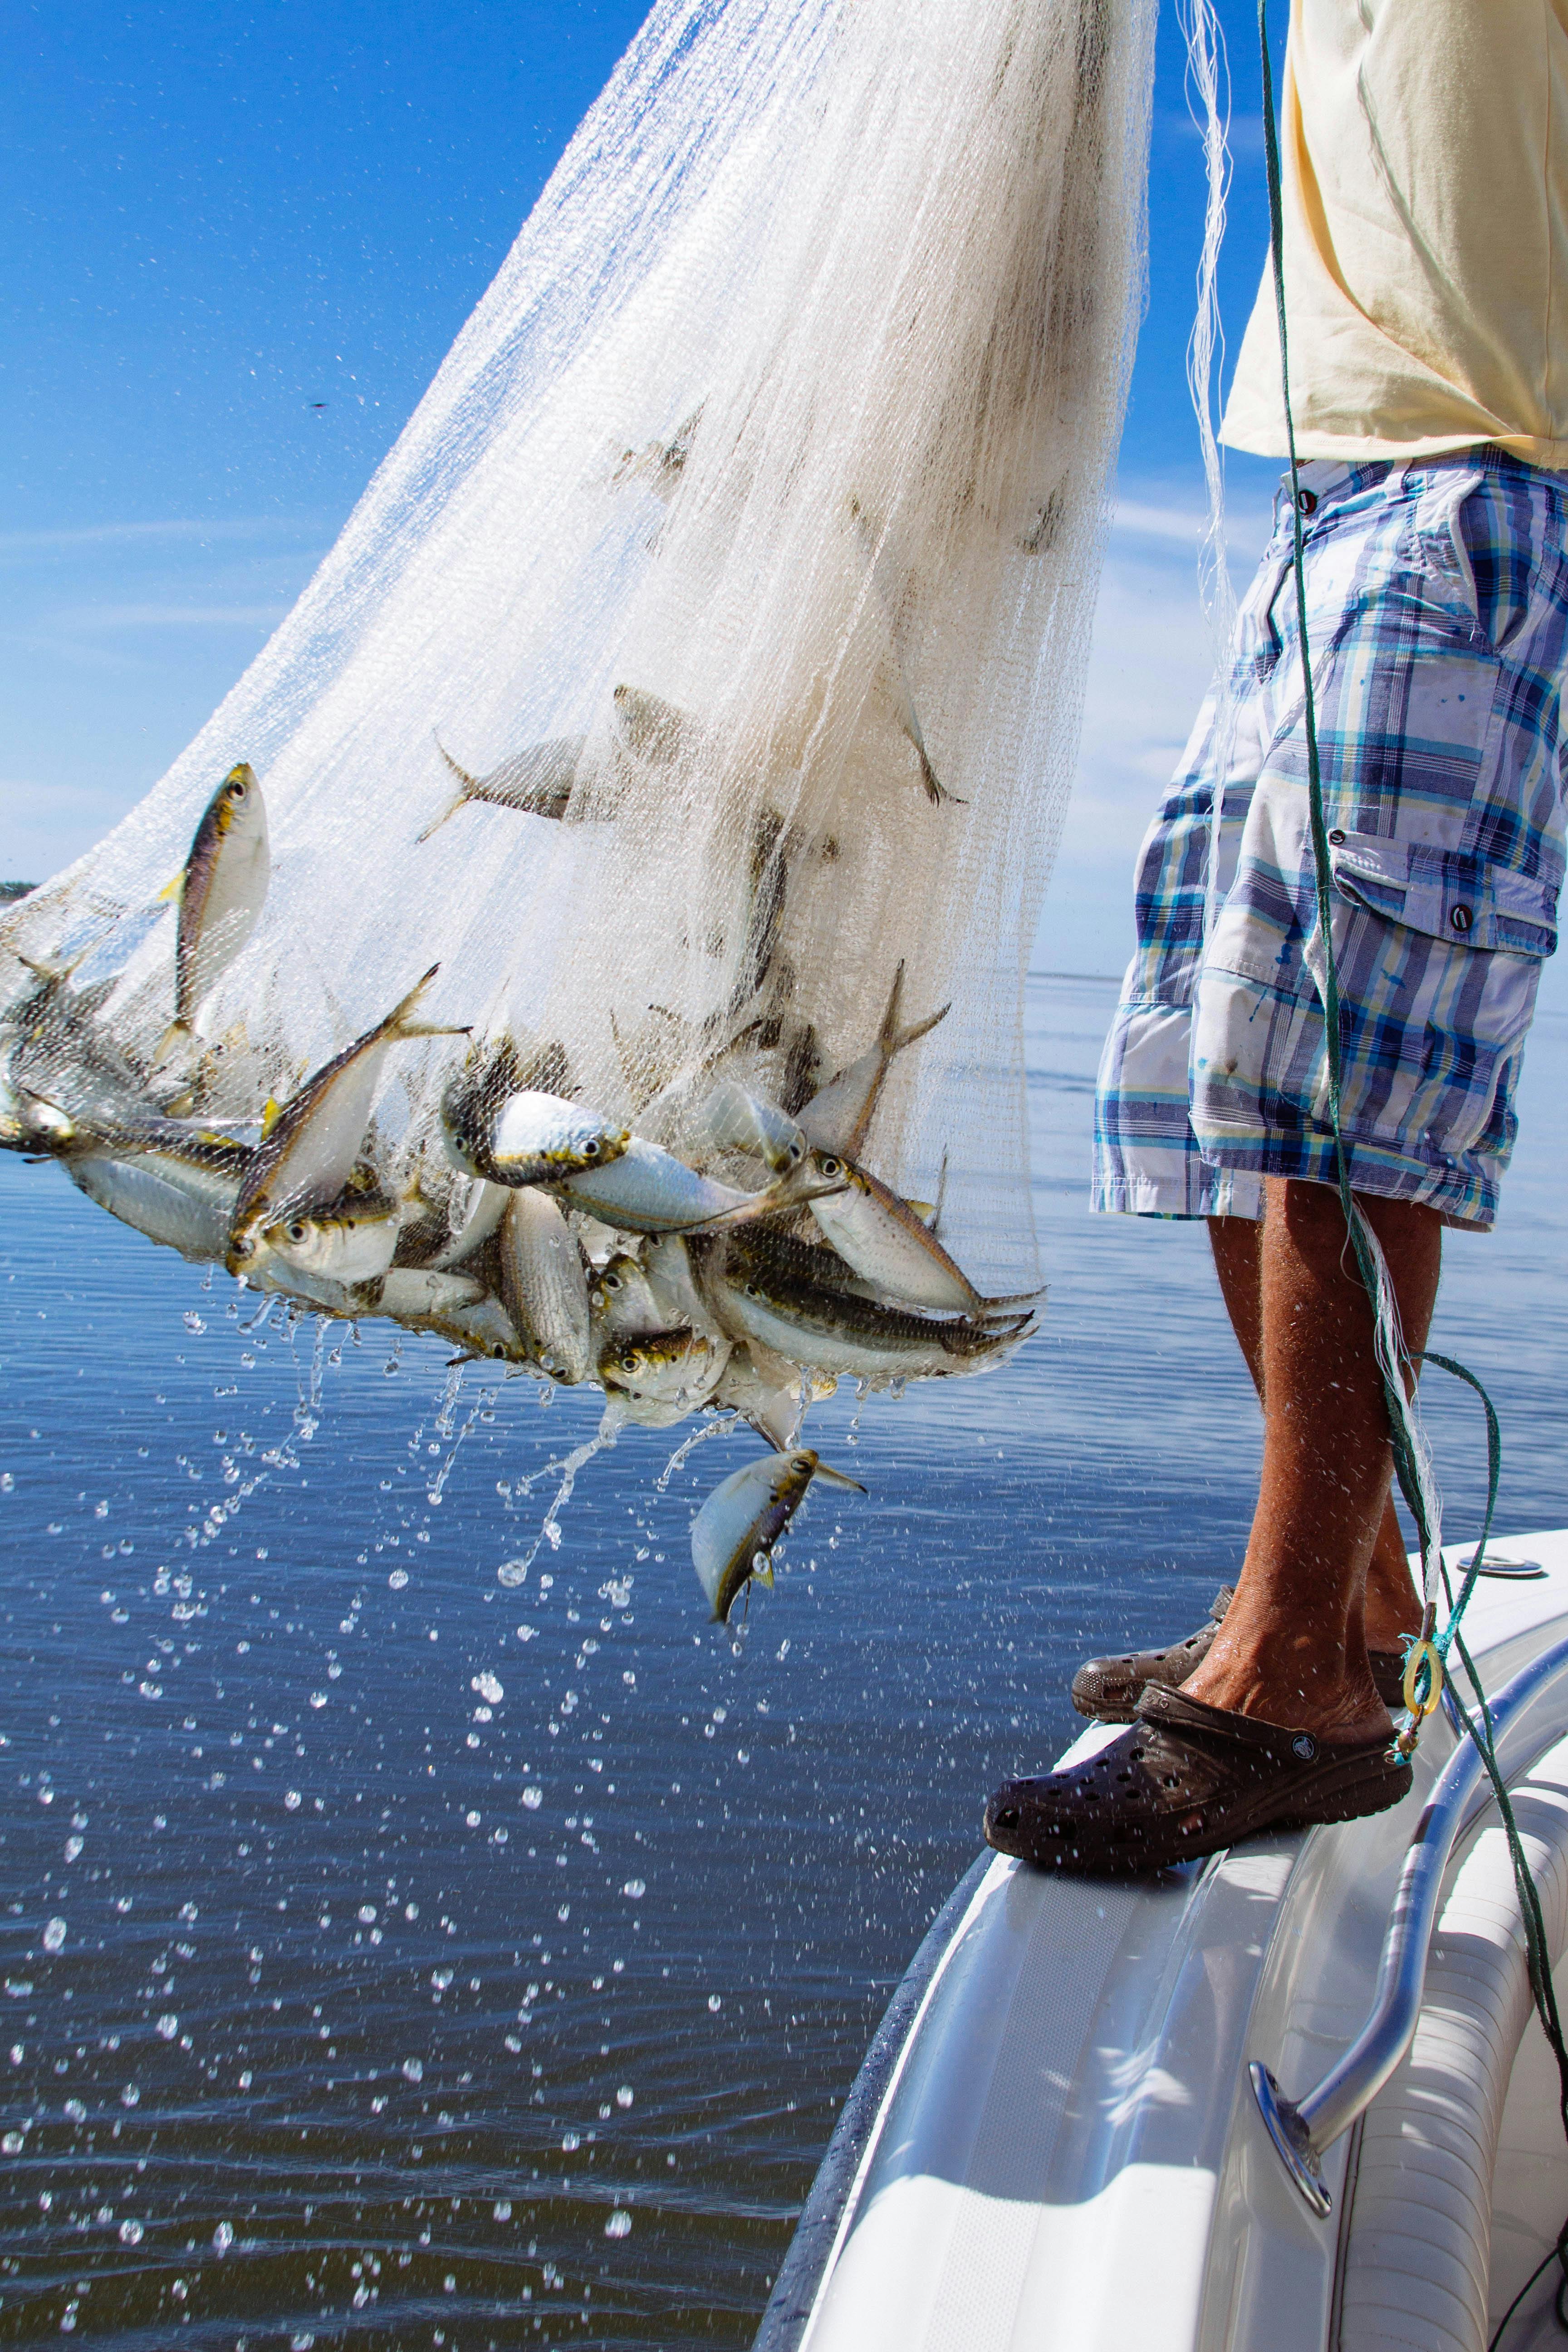 Shirtless Man Walking on Water Holding White Fish Net · Free Stock Photo